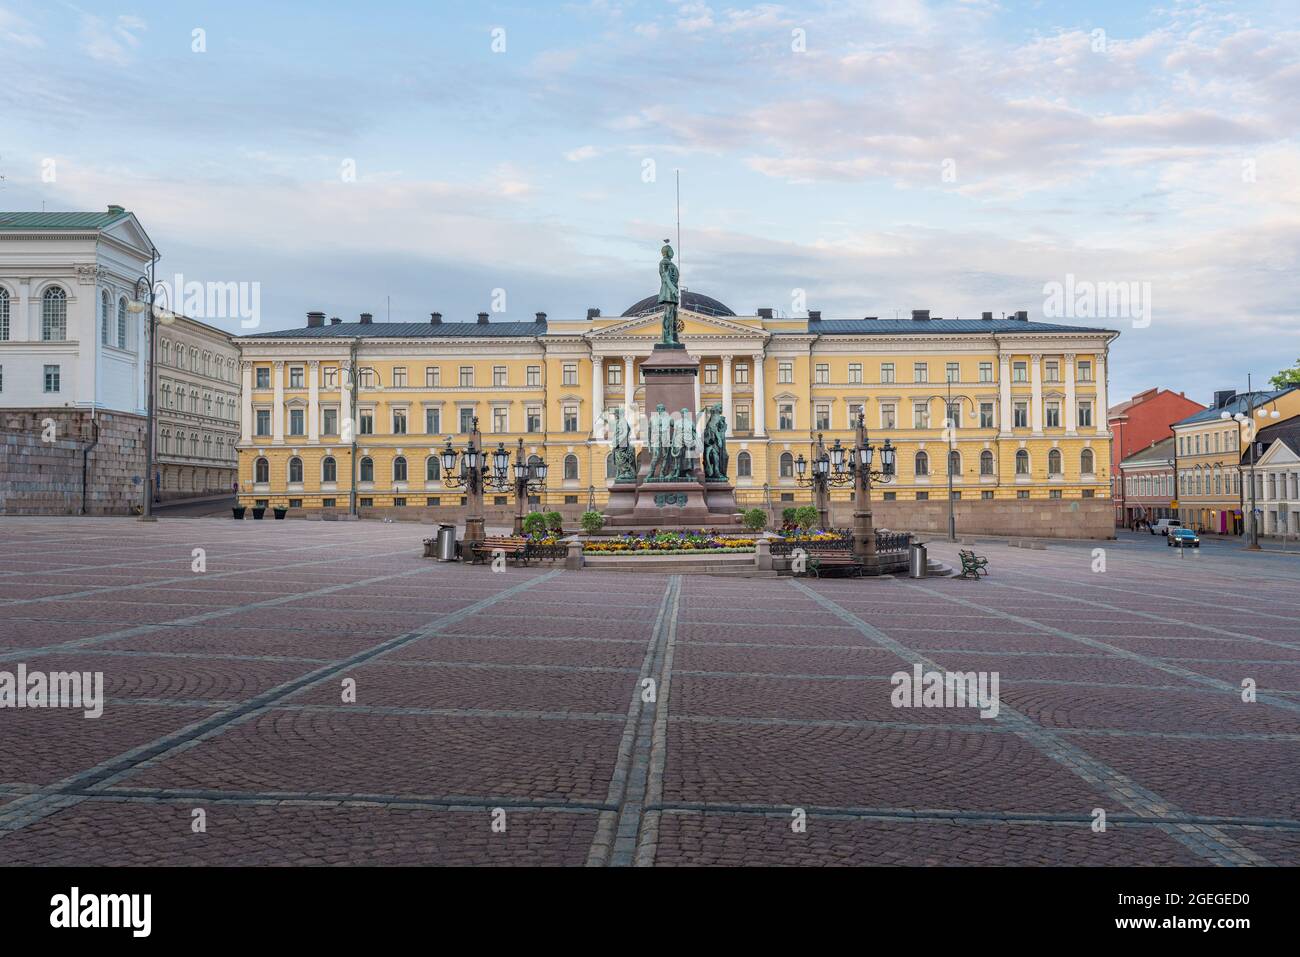 Palais du gouvernement sur la place du Sénat avec statue d'Alexandre II - Helsinki, Finlande Banque D'Images